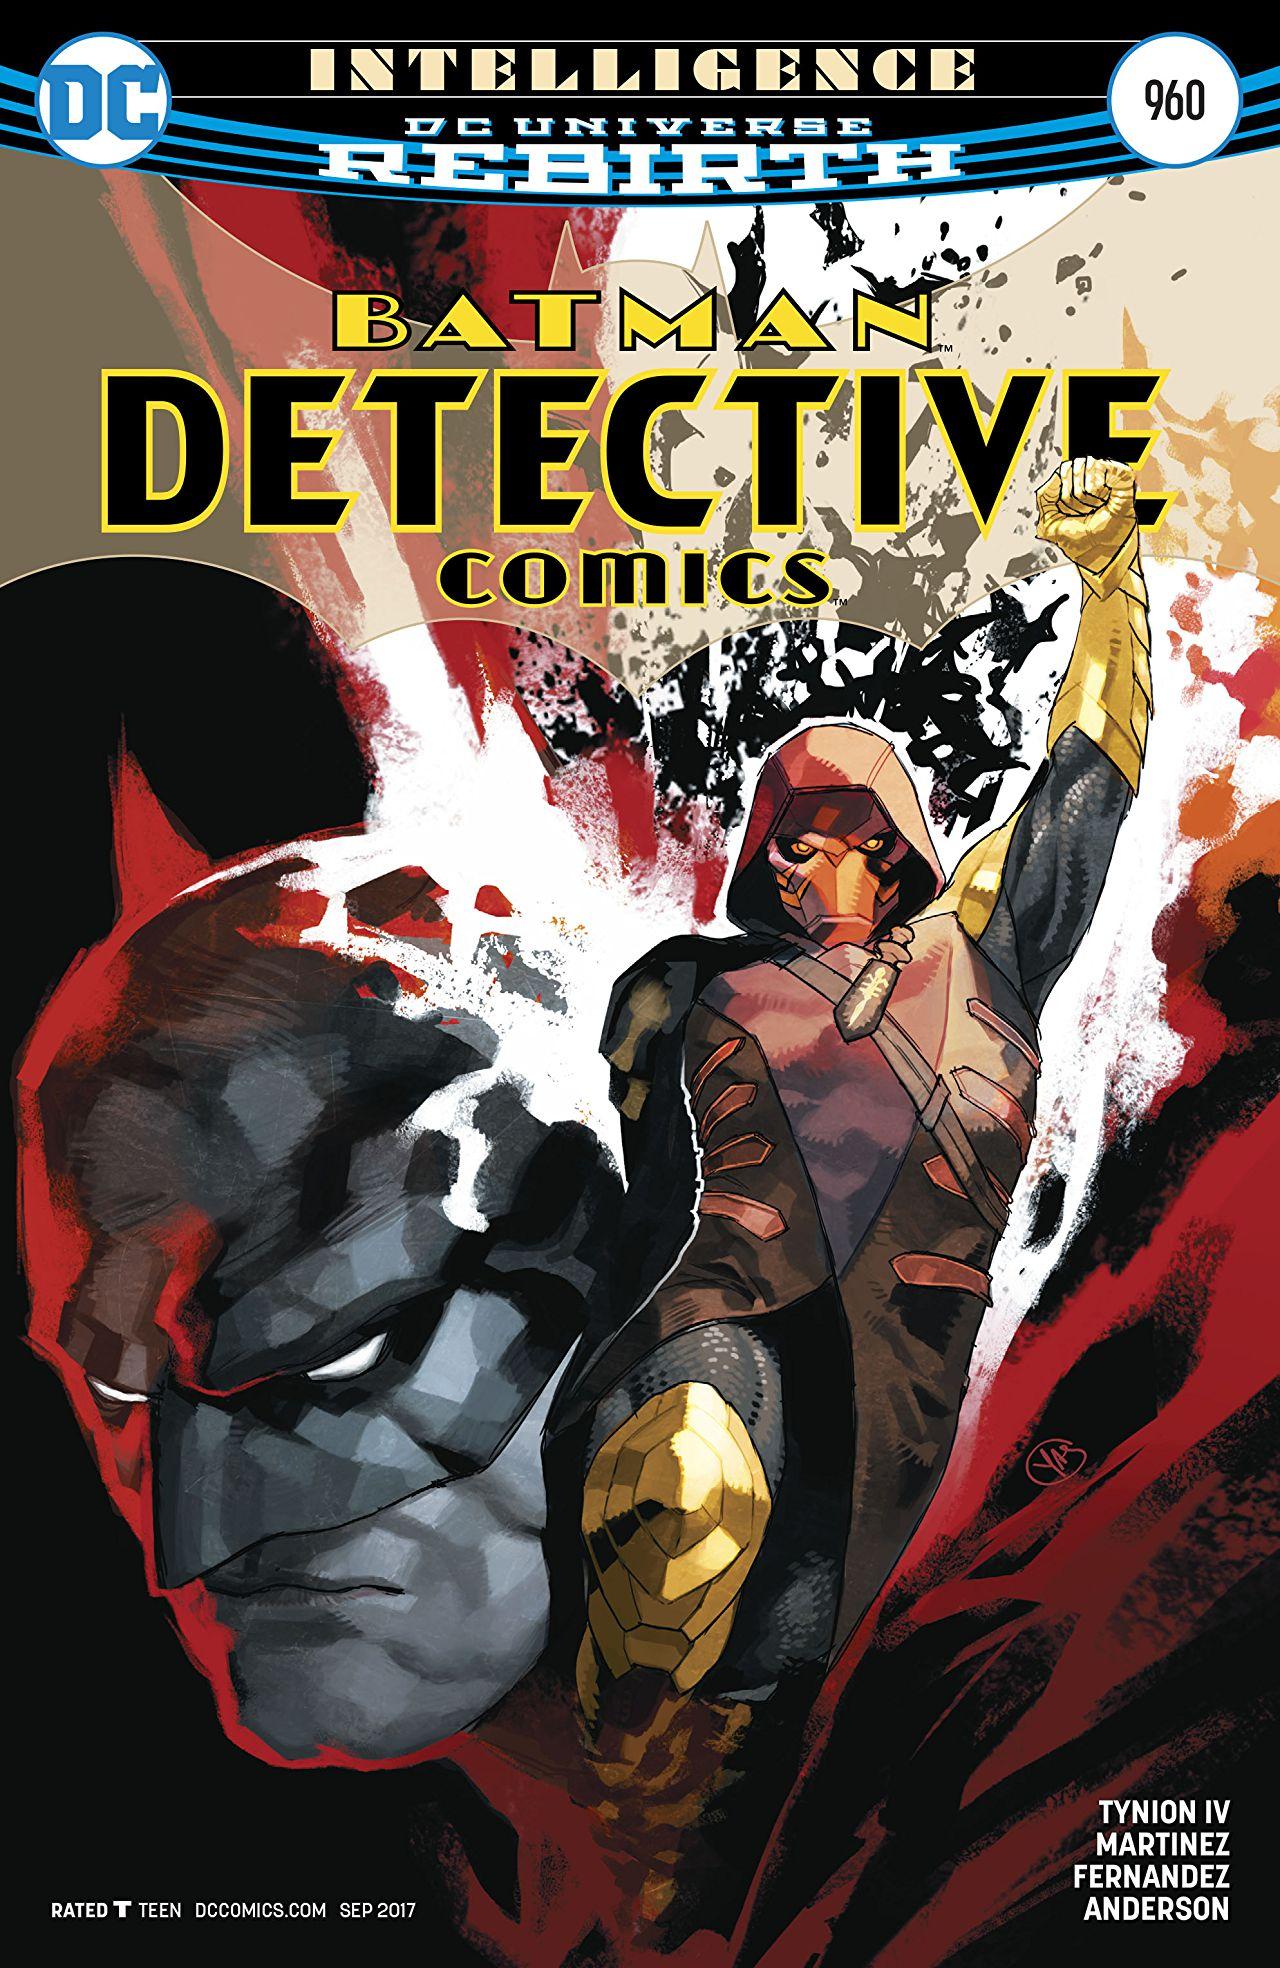 Detective Comics Vol. 1 #960